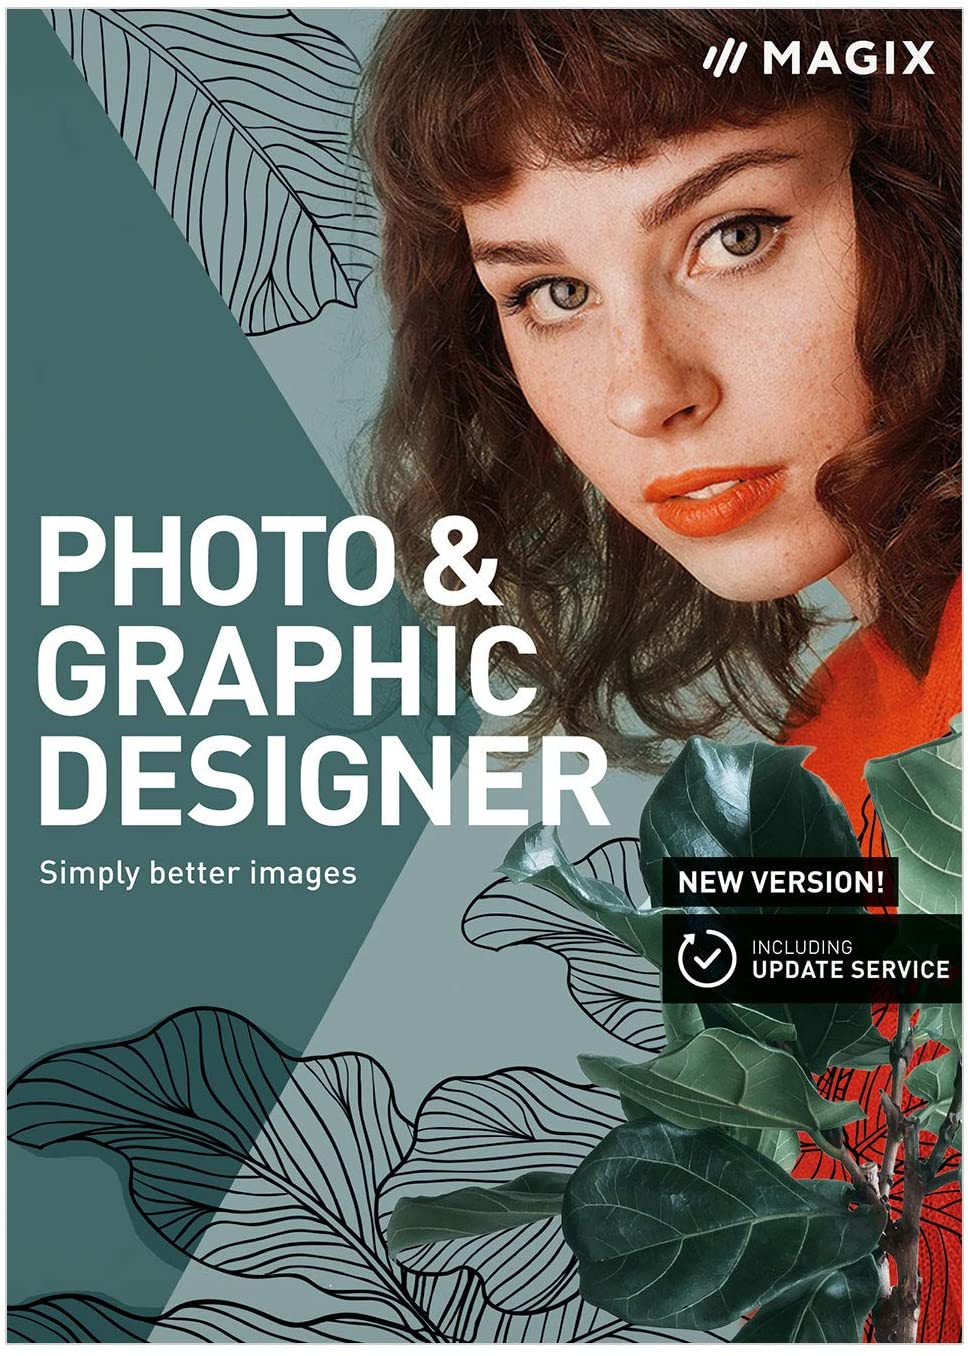 photo & graphic designer